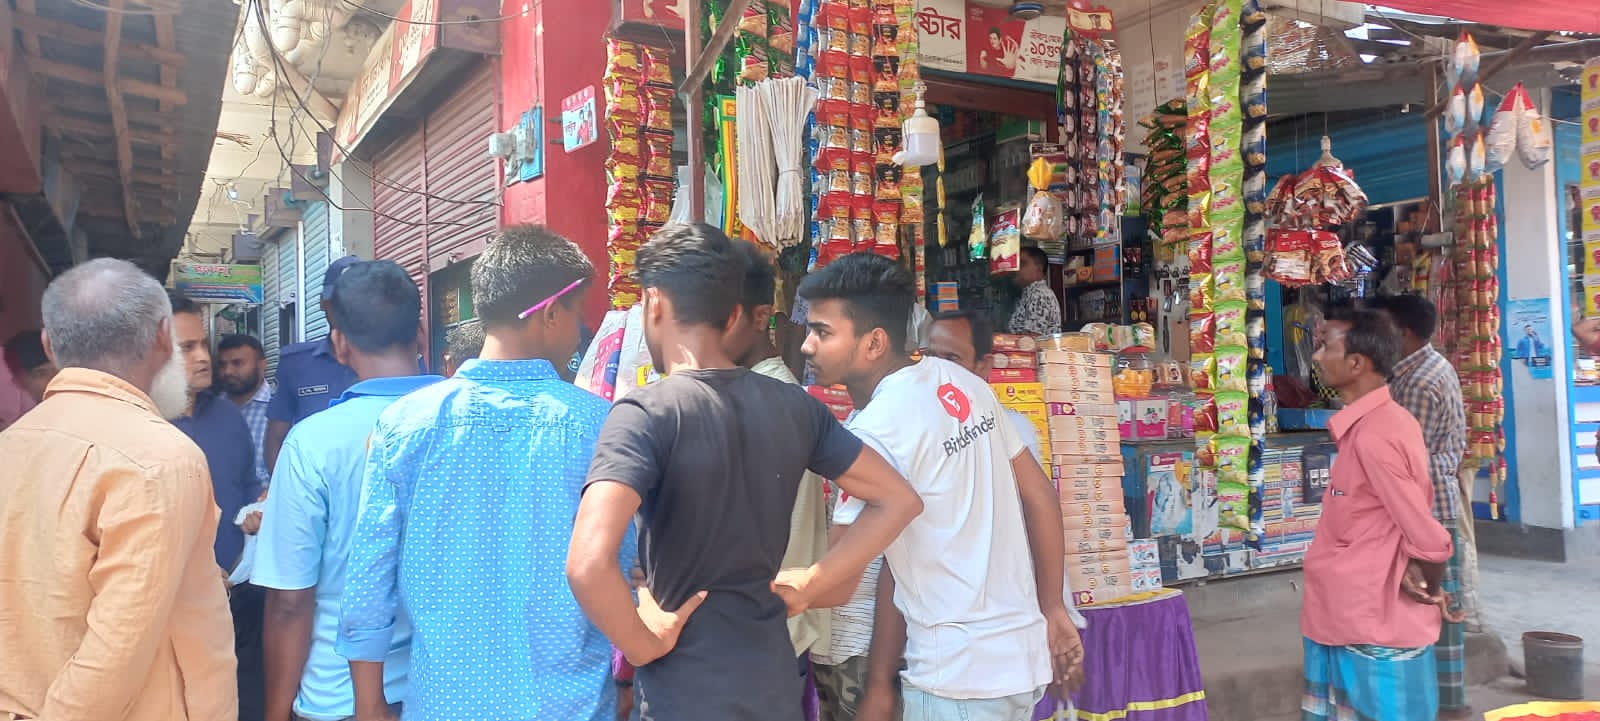 পীরগঞ্জে চার ব্যবসা প্রতিষ্ঠানকে আট হাজার টাকা জরিমানা